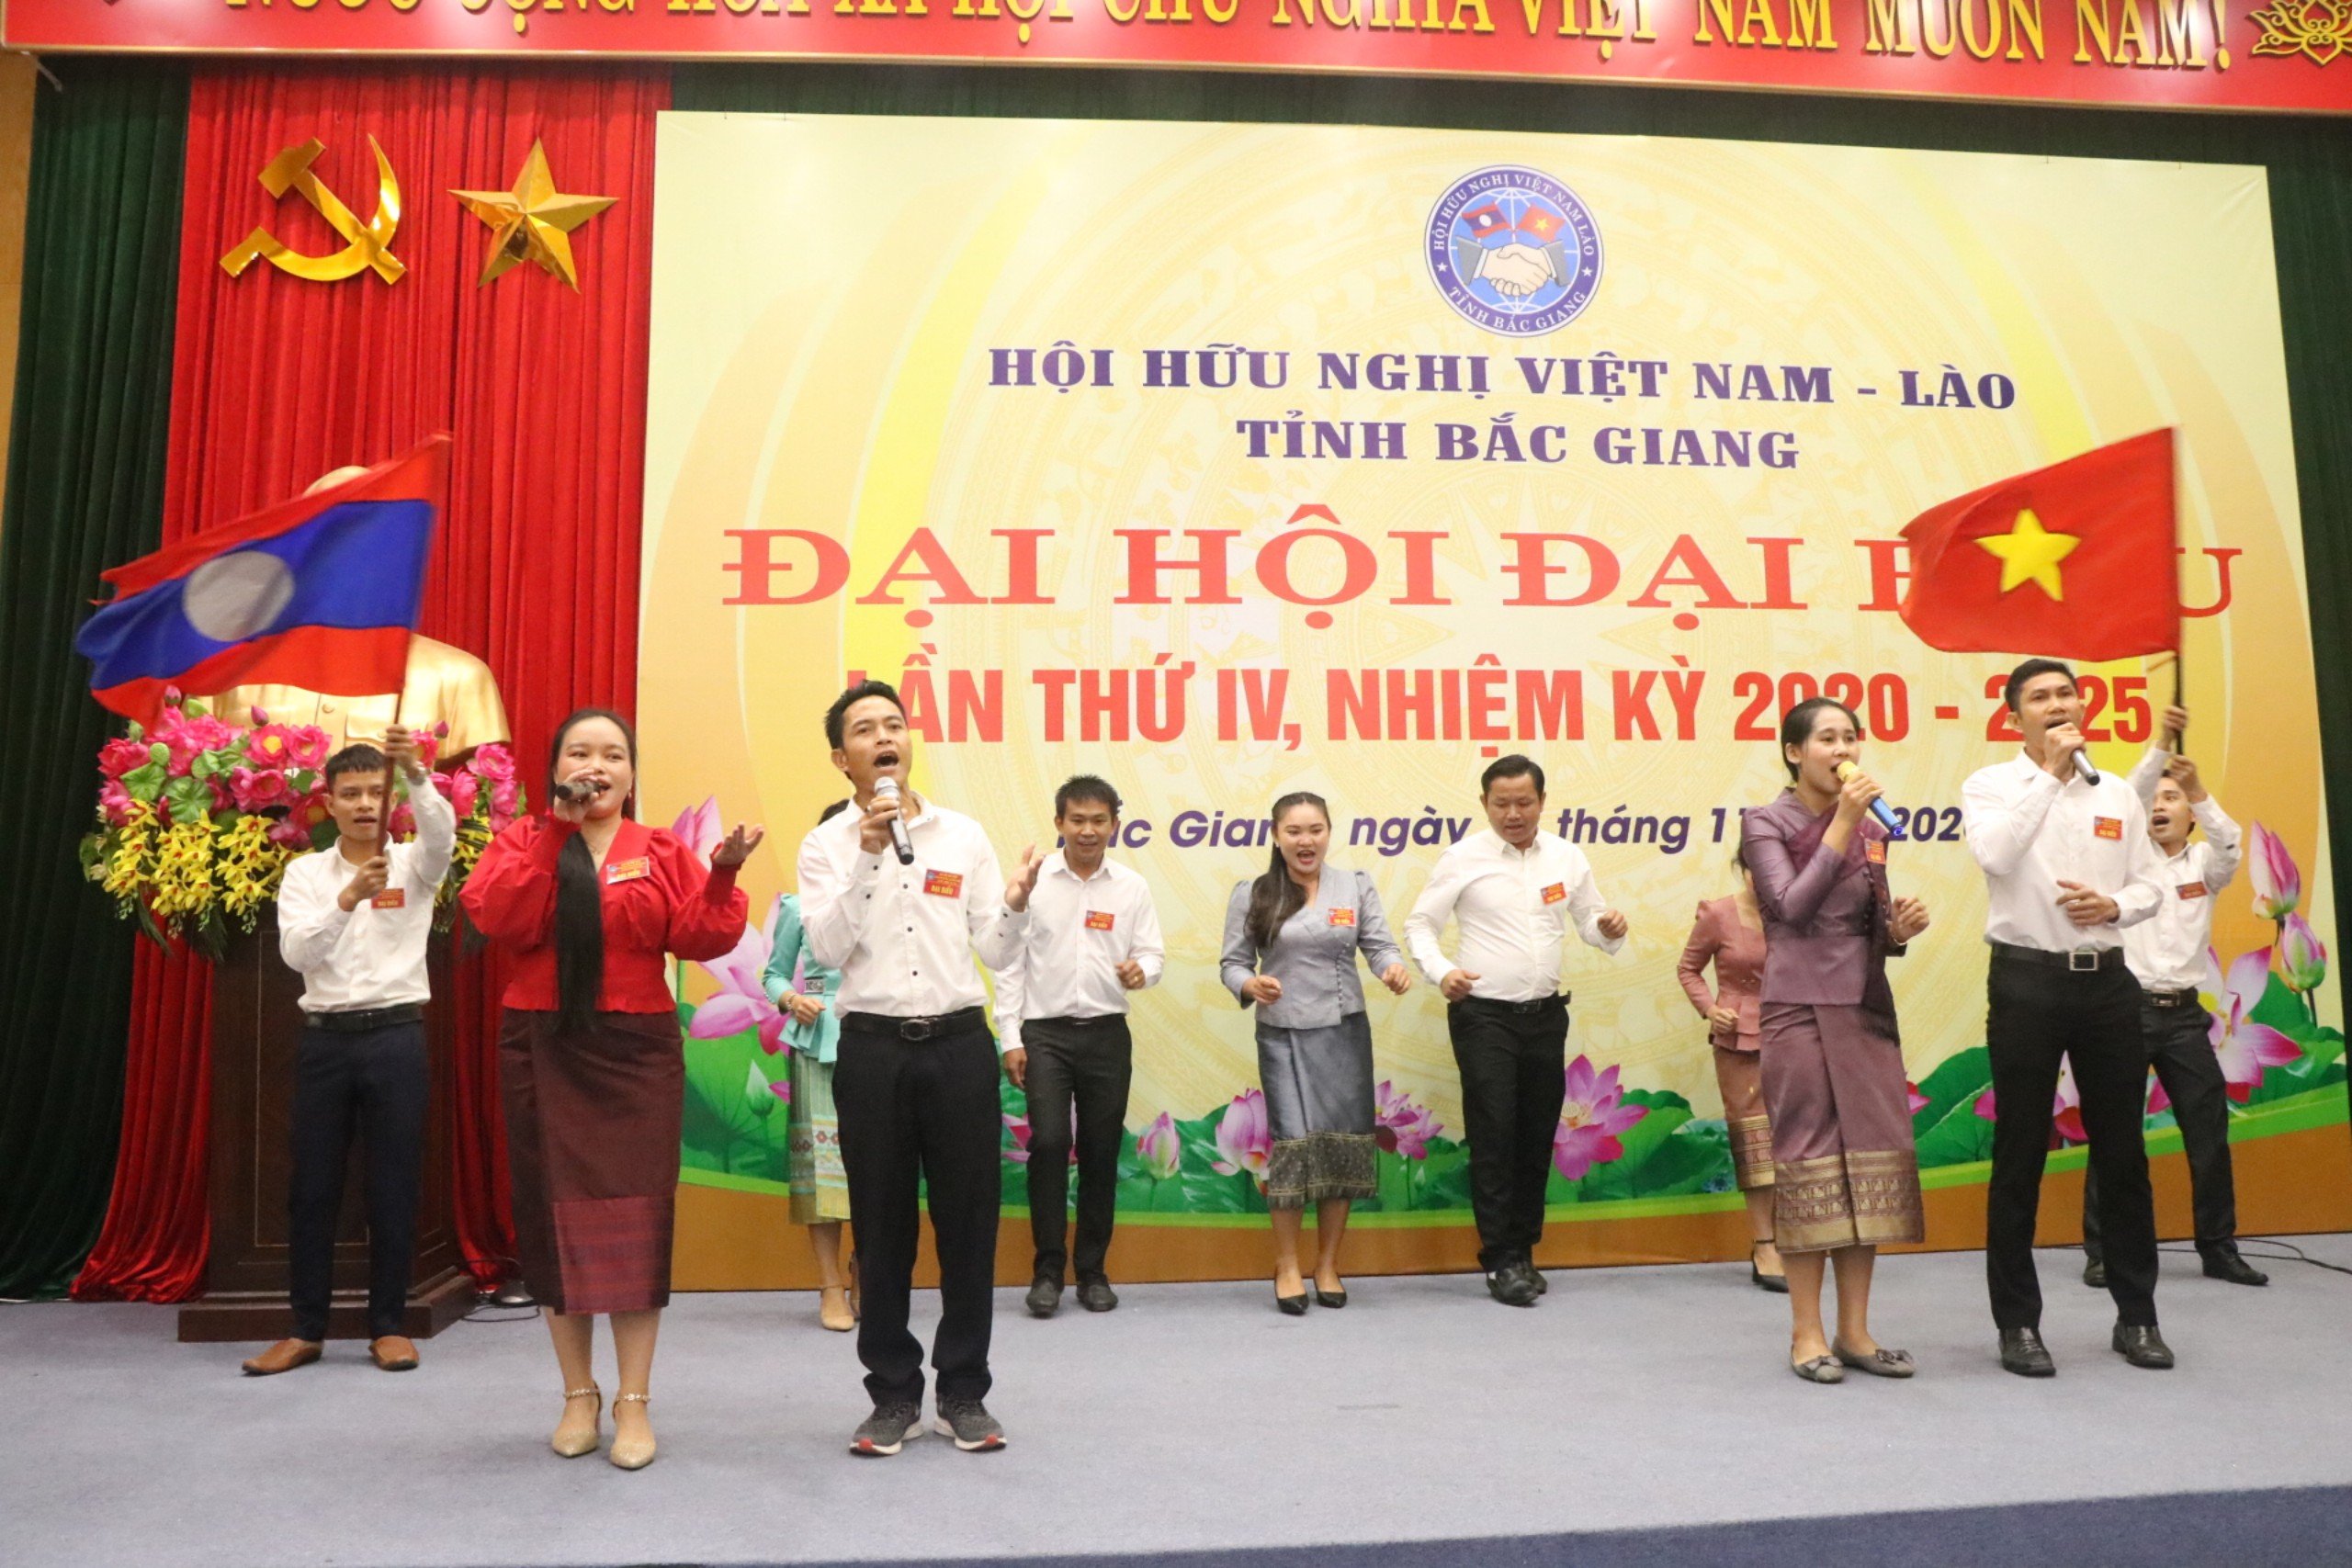 Bắc Giang: Ban hành Điều lệ Hội Hữu nghị Việt Nam - Lào tỉnh Bắc Giang